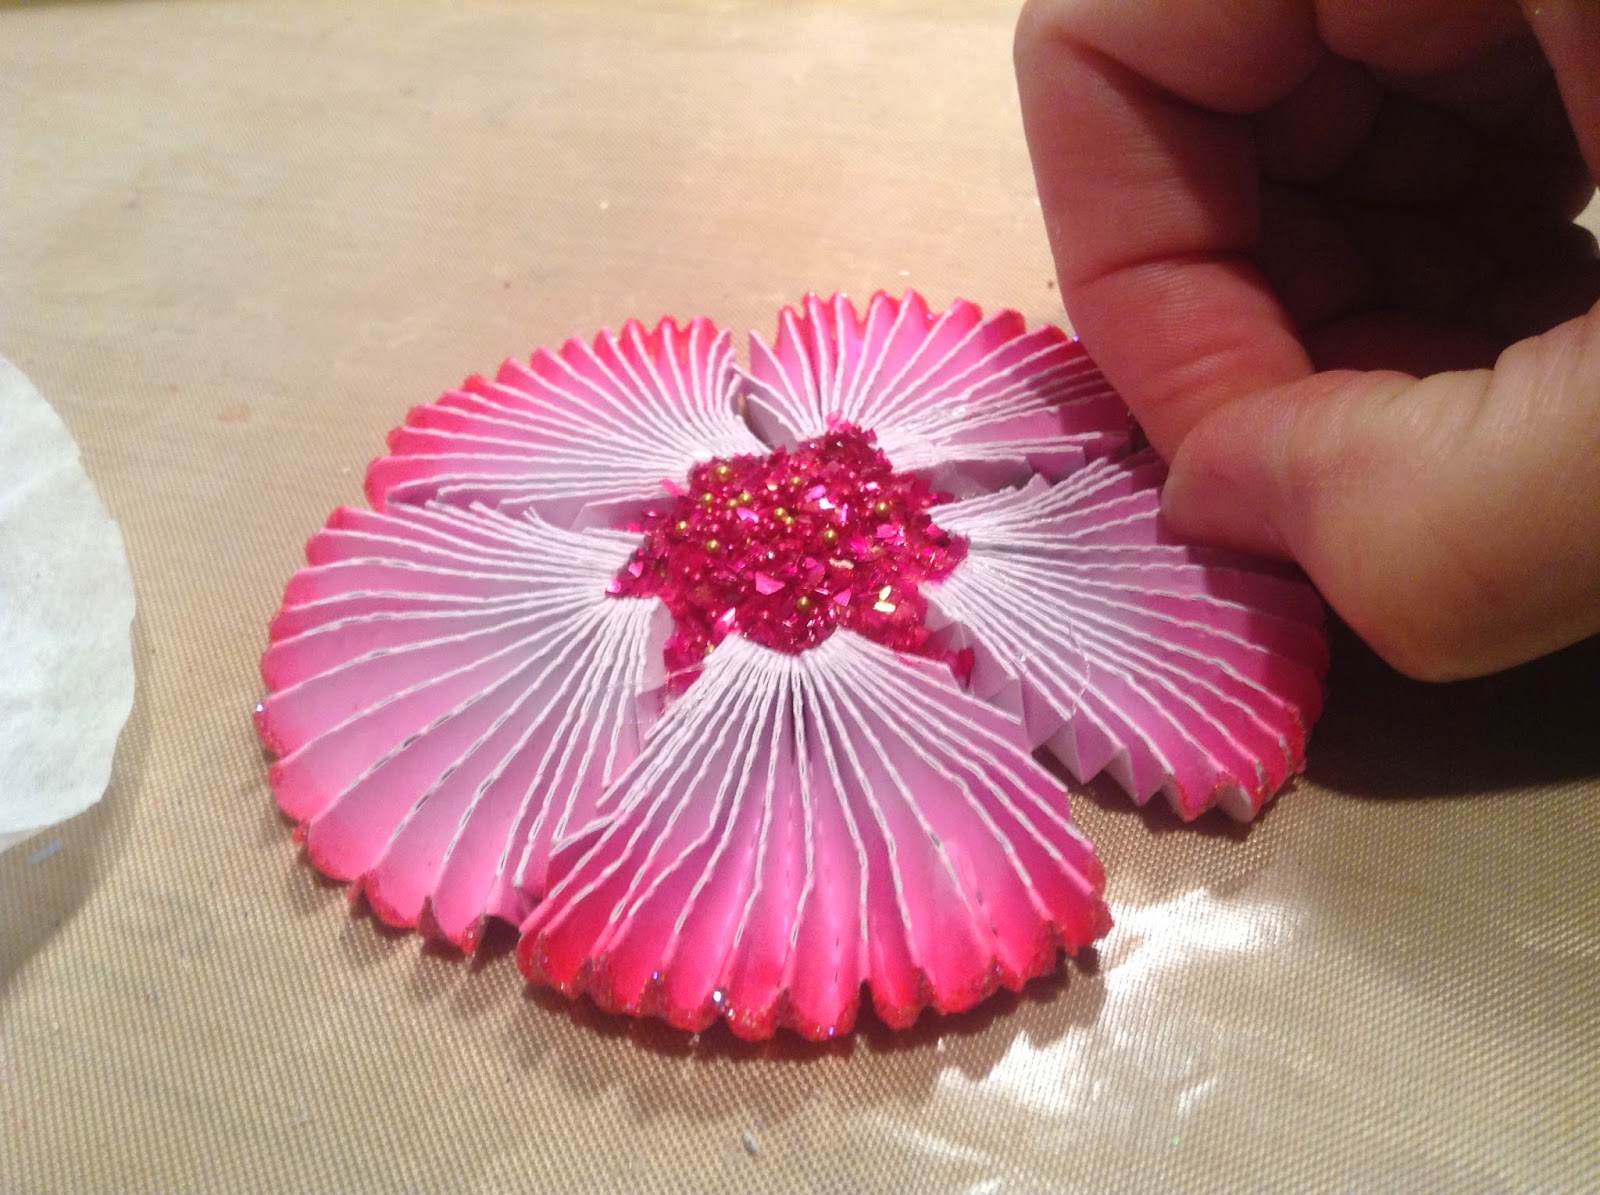 ArtGlitterBlog: Art Glitter Flowers